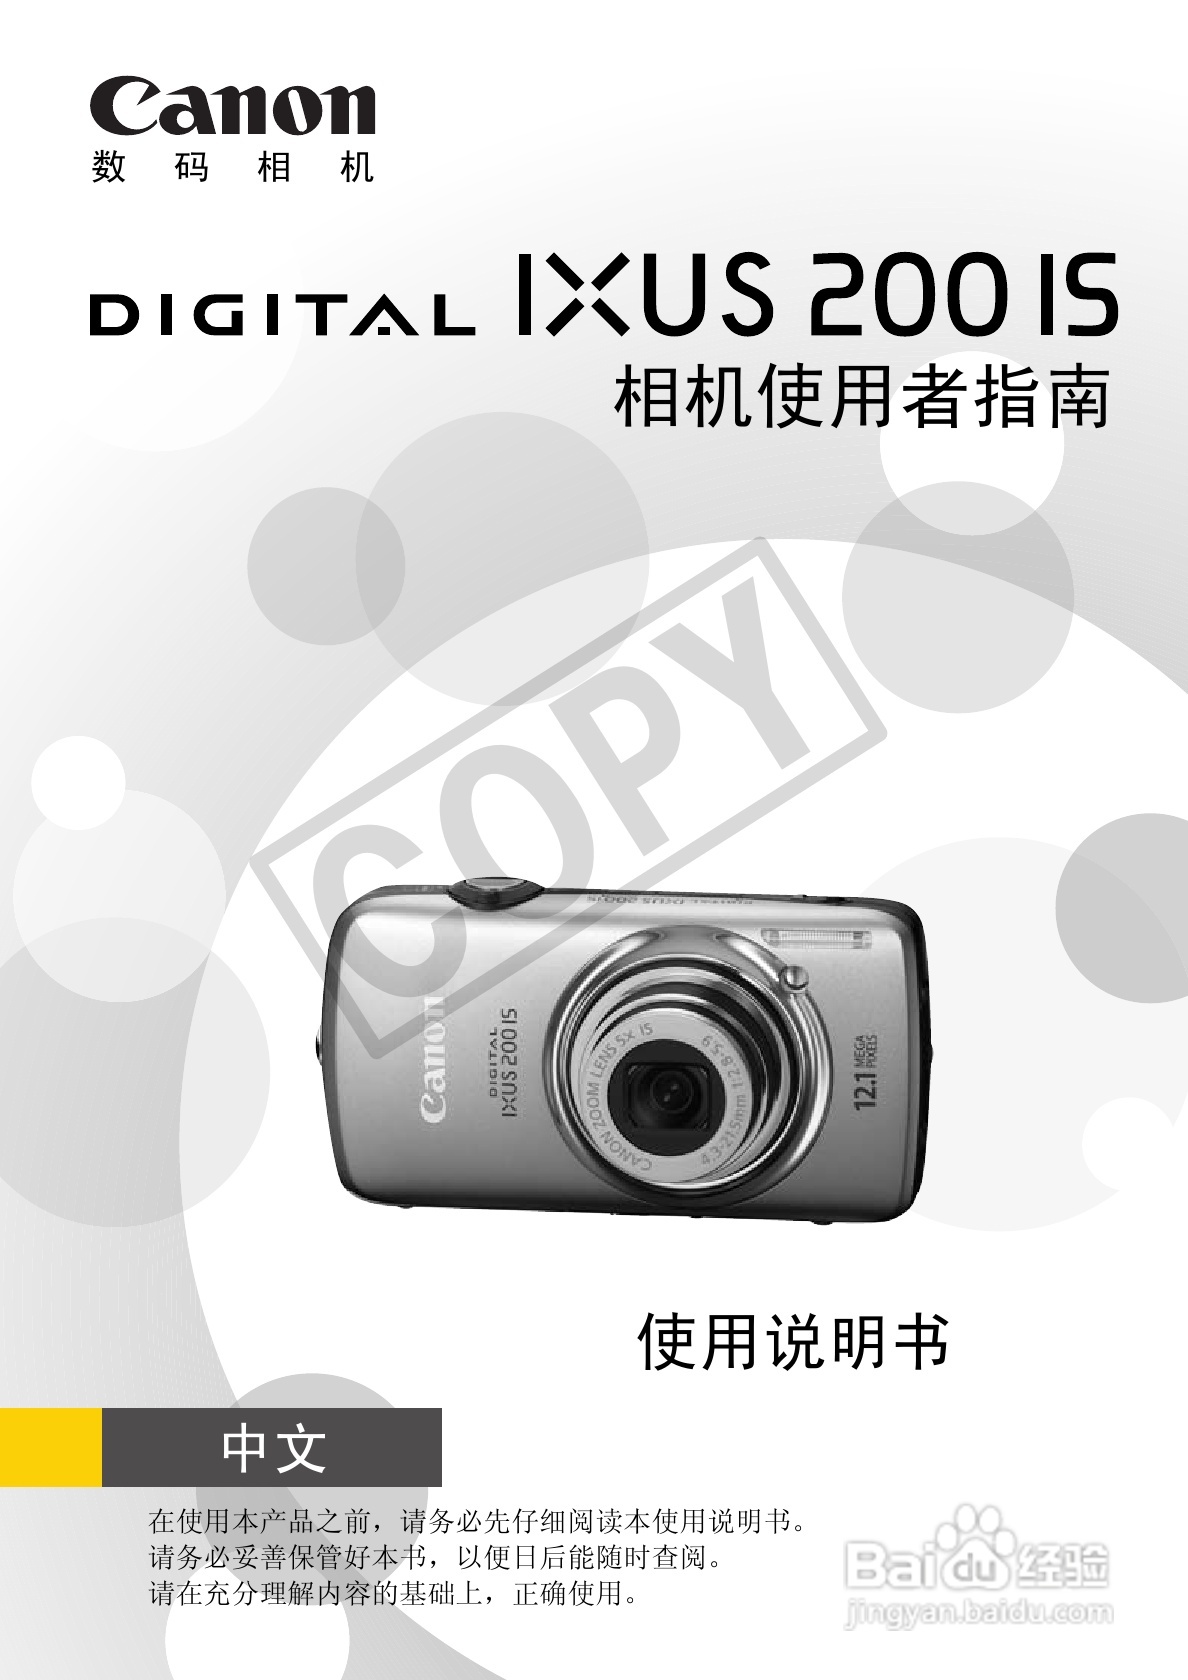 设置你的索尼相机，是拍好照片的第一步-影像中国网-中国摄影家协会主办